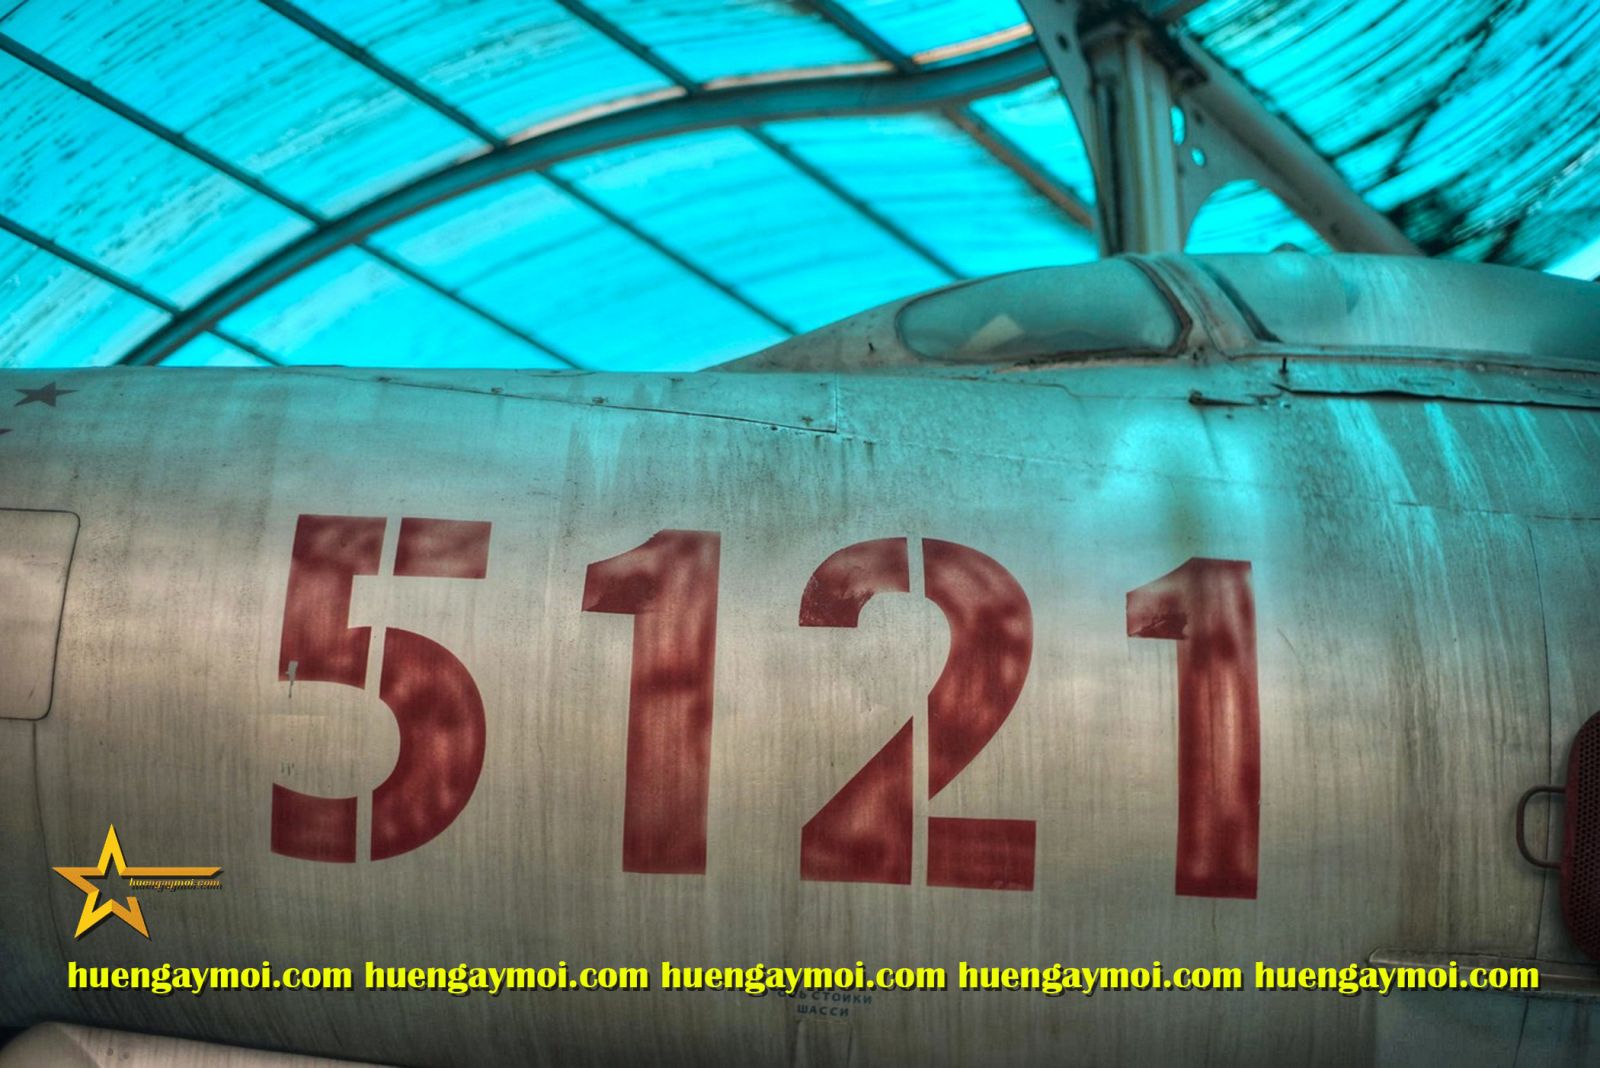 MÁY BAY MiG-21SỐ HIỆU 5121 – CHIẾN CÔNG PHI THƯỜNG